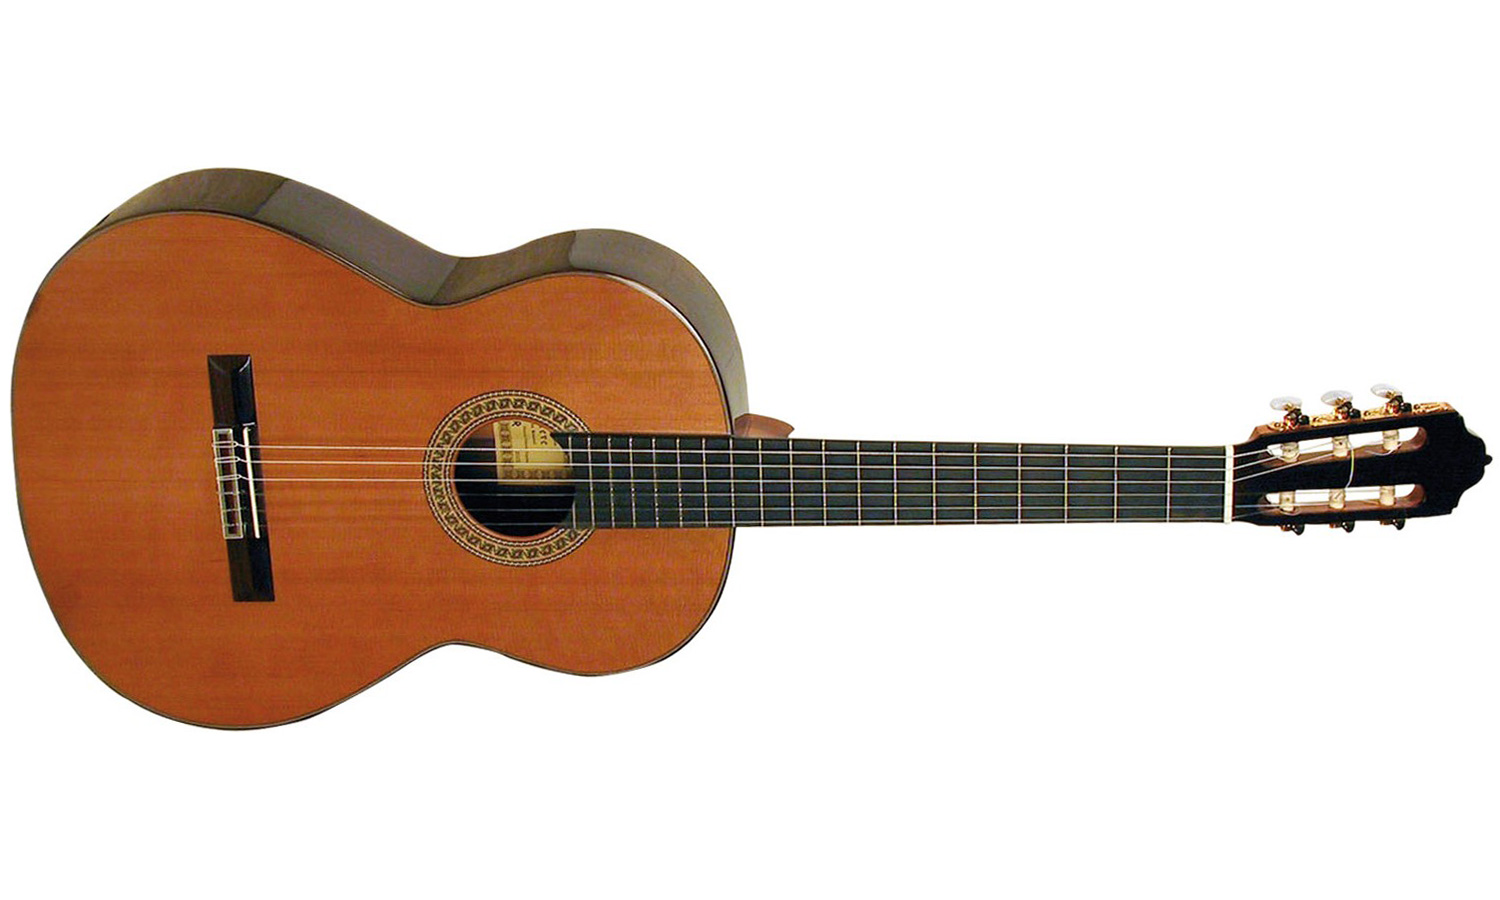 Esteve 7sr 4/4 Cedre Palissandre Eb - Naturel - Classical guitar 4/4 size - Variation 1